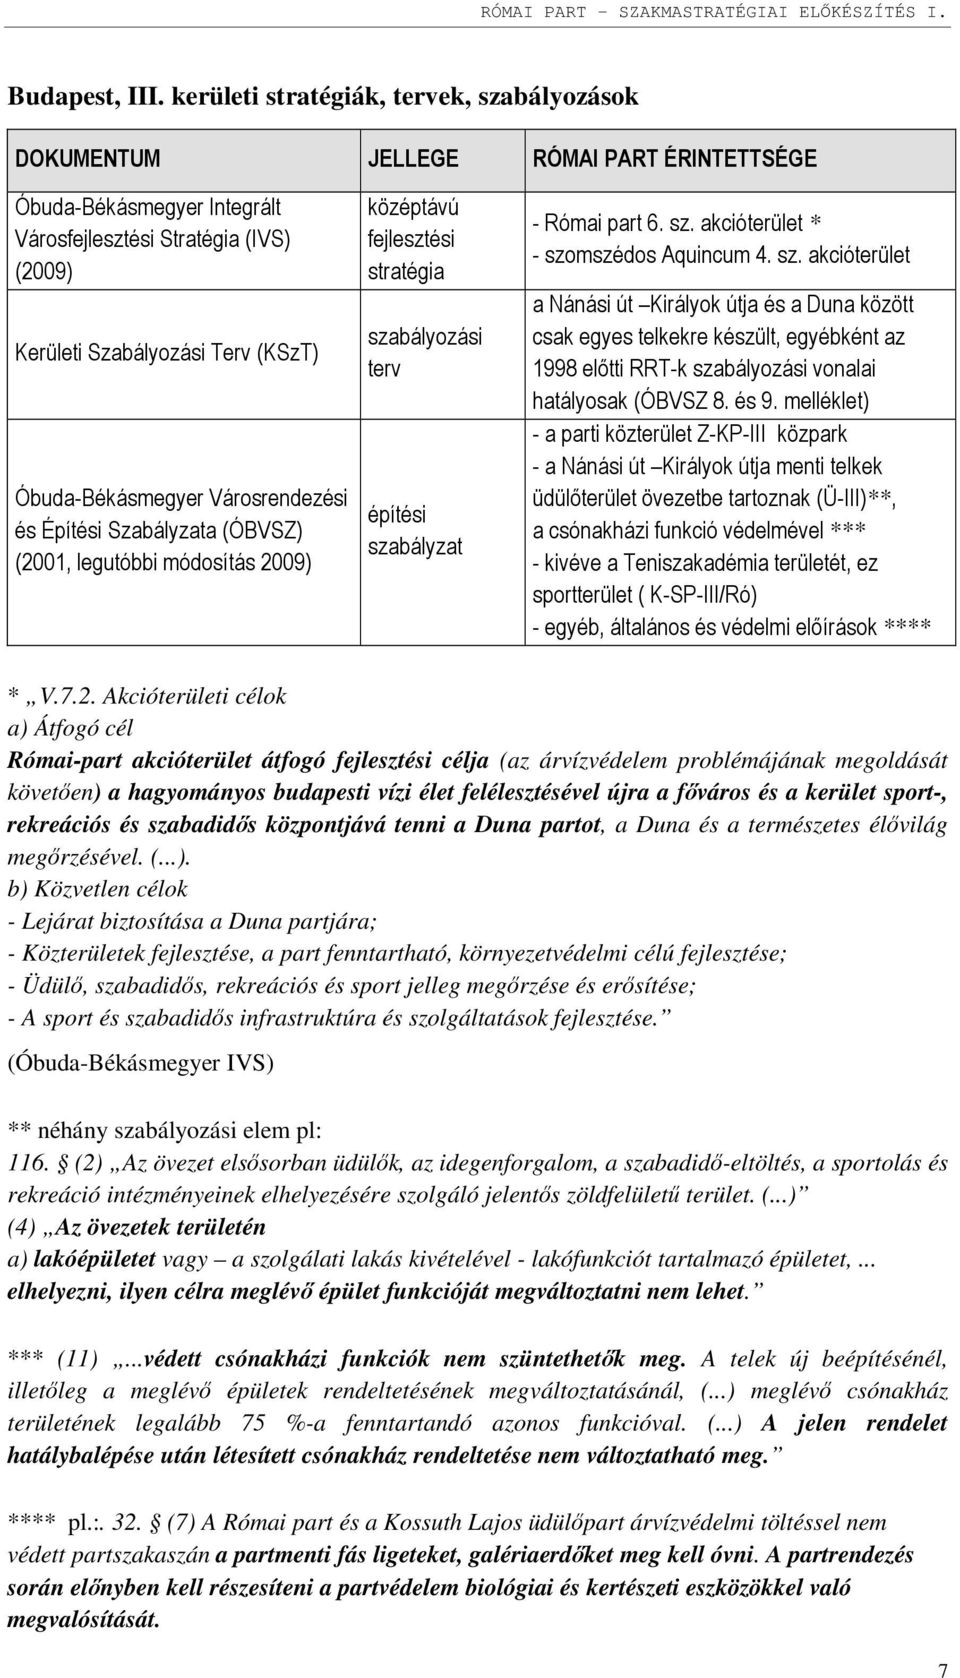 Óbuda-Békásmegyer Városrendezési és Építési Szabályzata (ÓBVSZ) (2001, legutóbbi módosítás 2009) középtávú fejlesztési stratégia szabályozási terv építési szabályzat - Római part 6. sz. akcióterület * - szomszédos Aquincum 4.